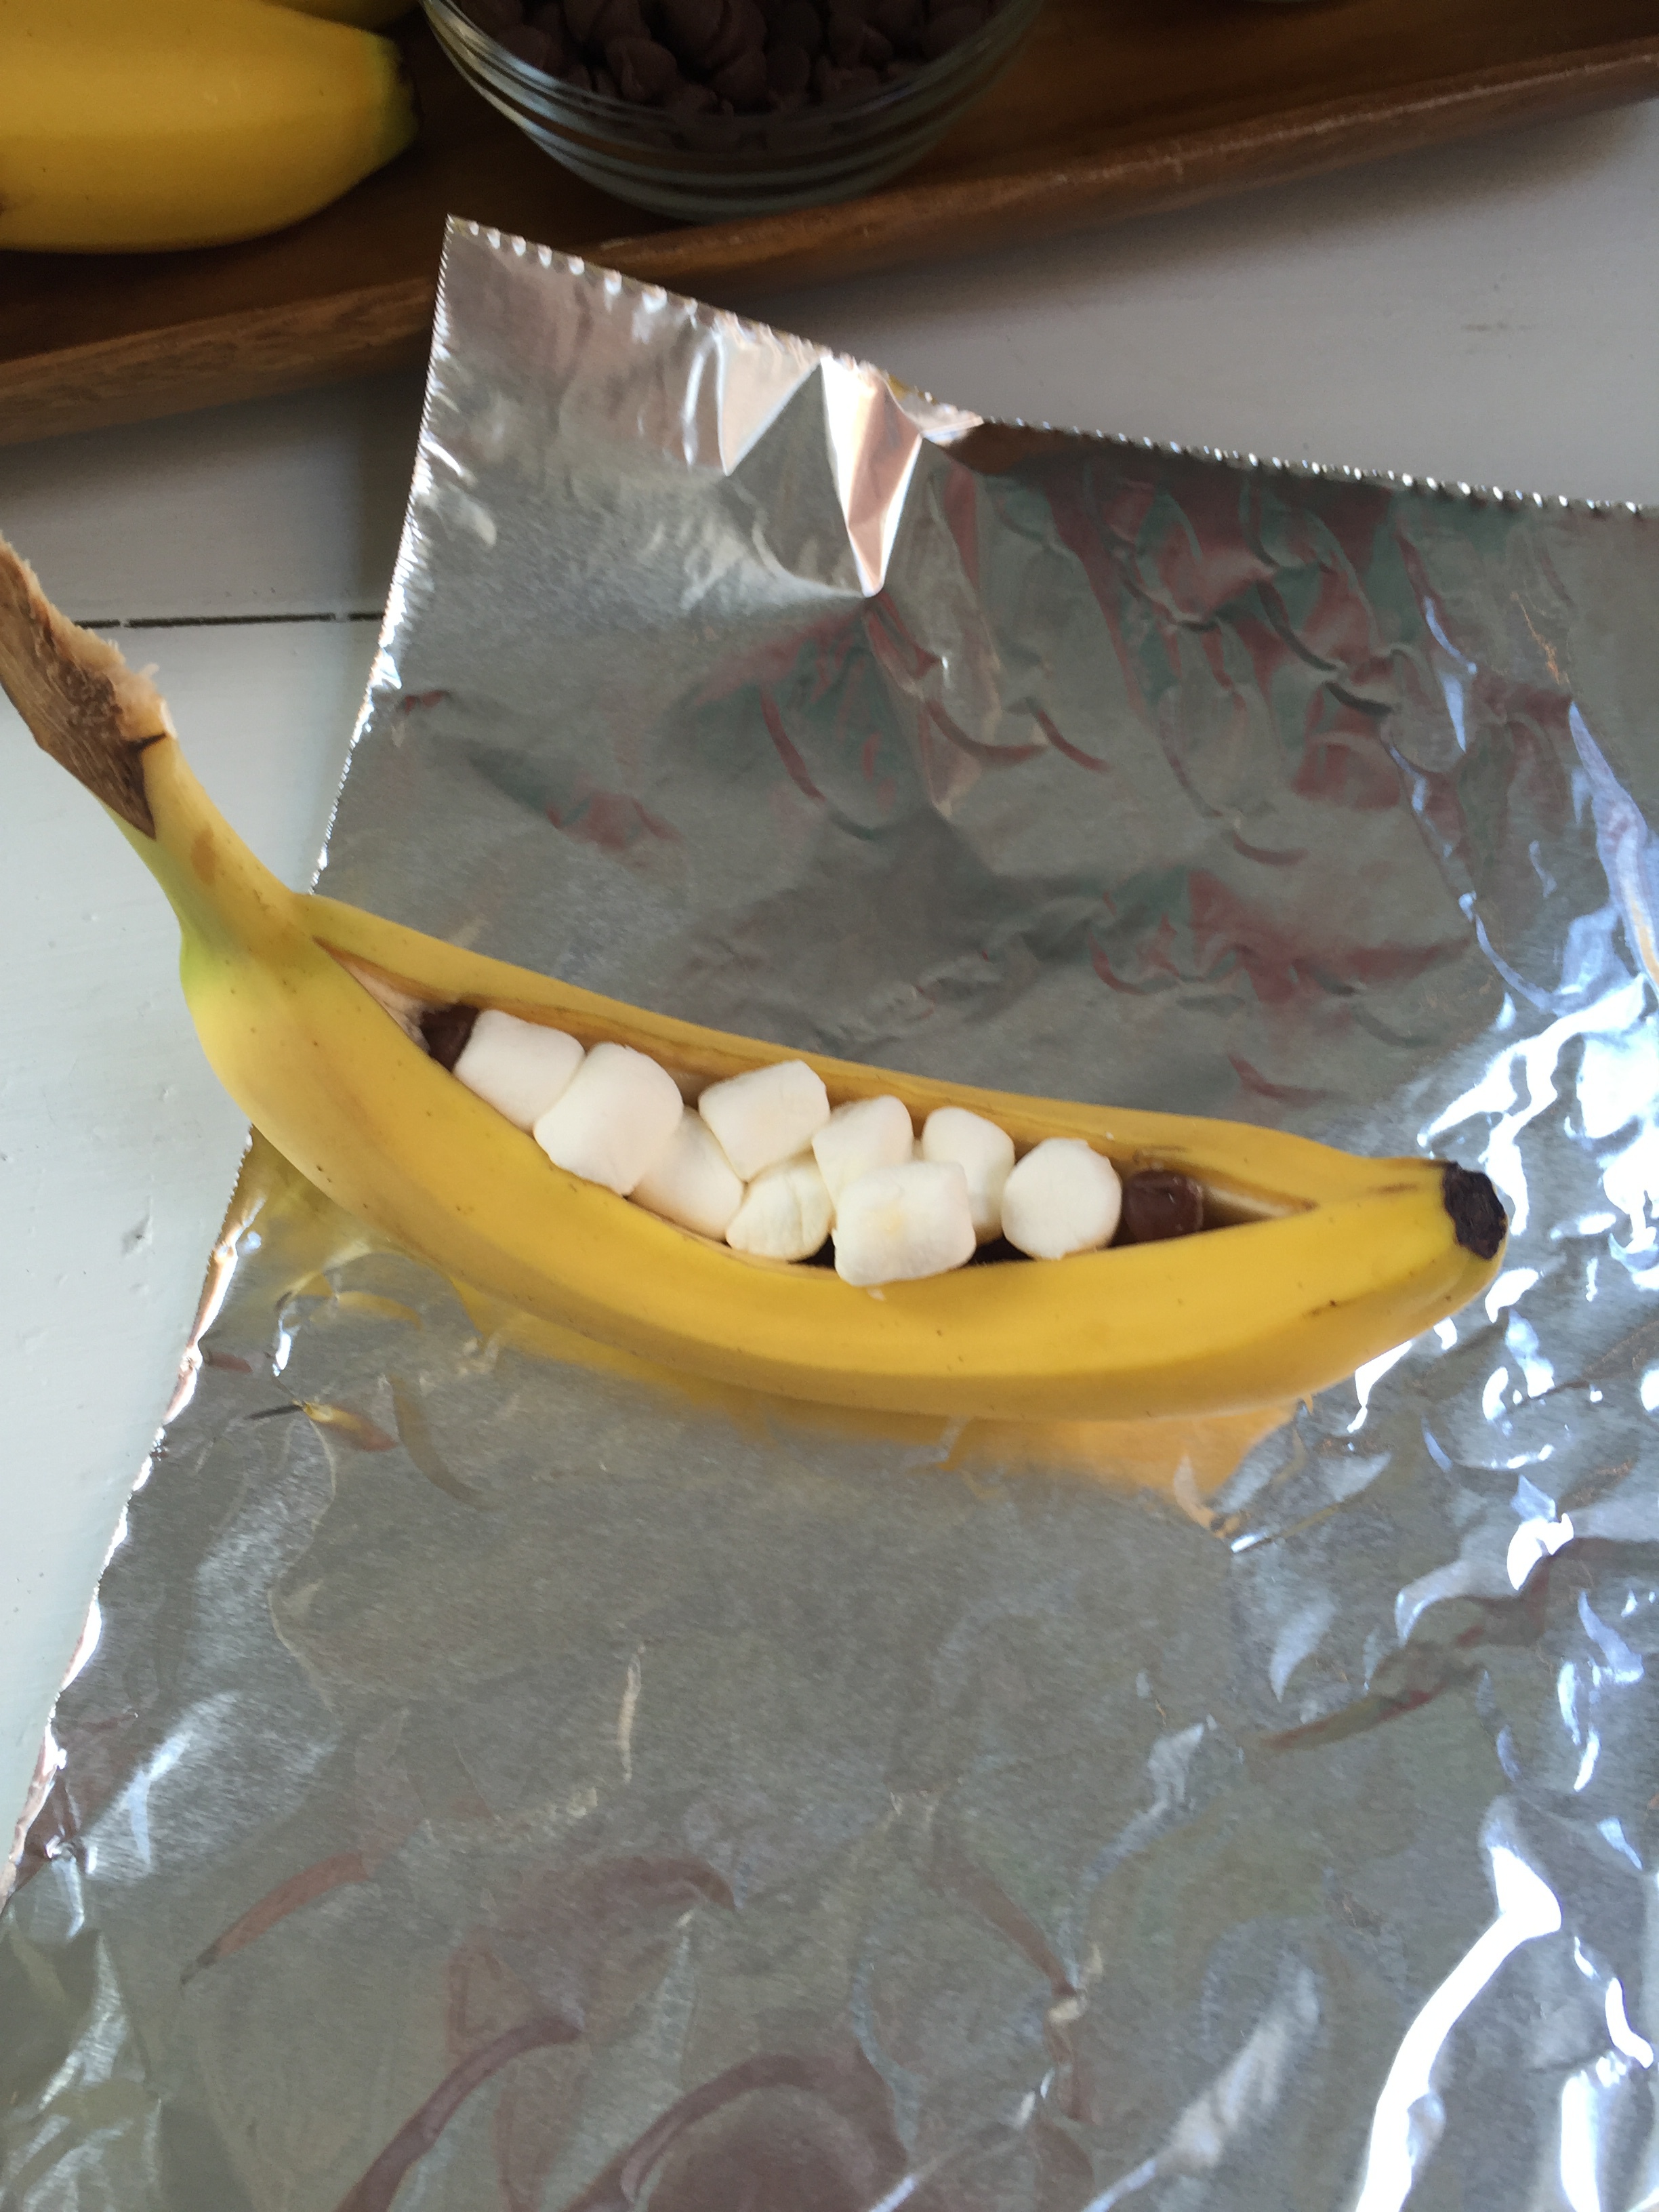 making a banana boat